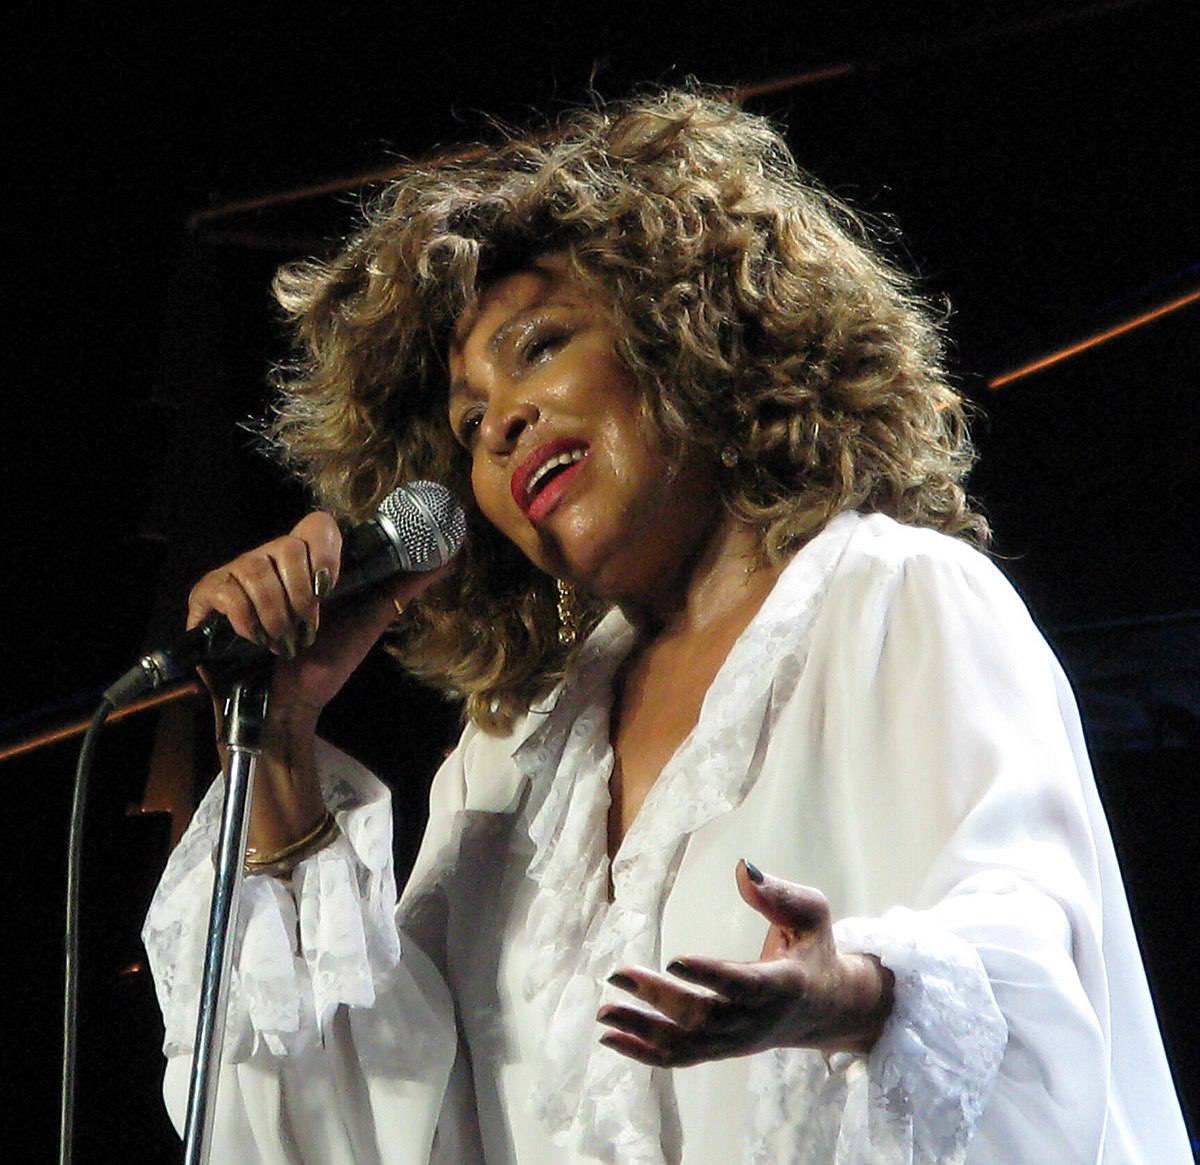 È morta Tina Turner, aveva 83 anni.

#24maggio